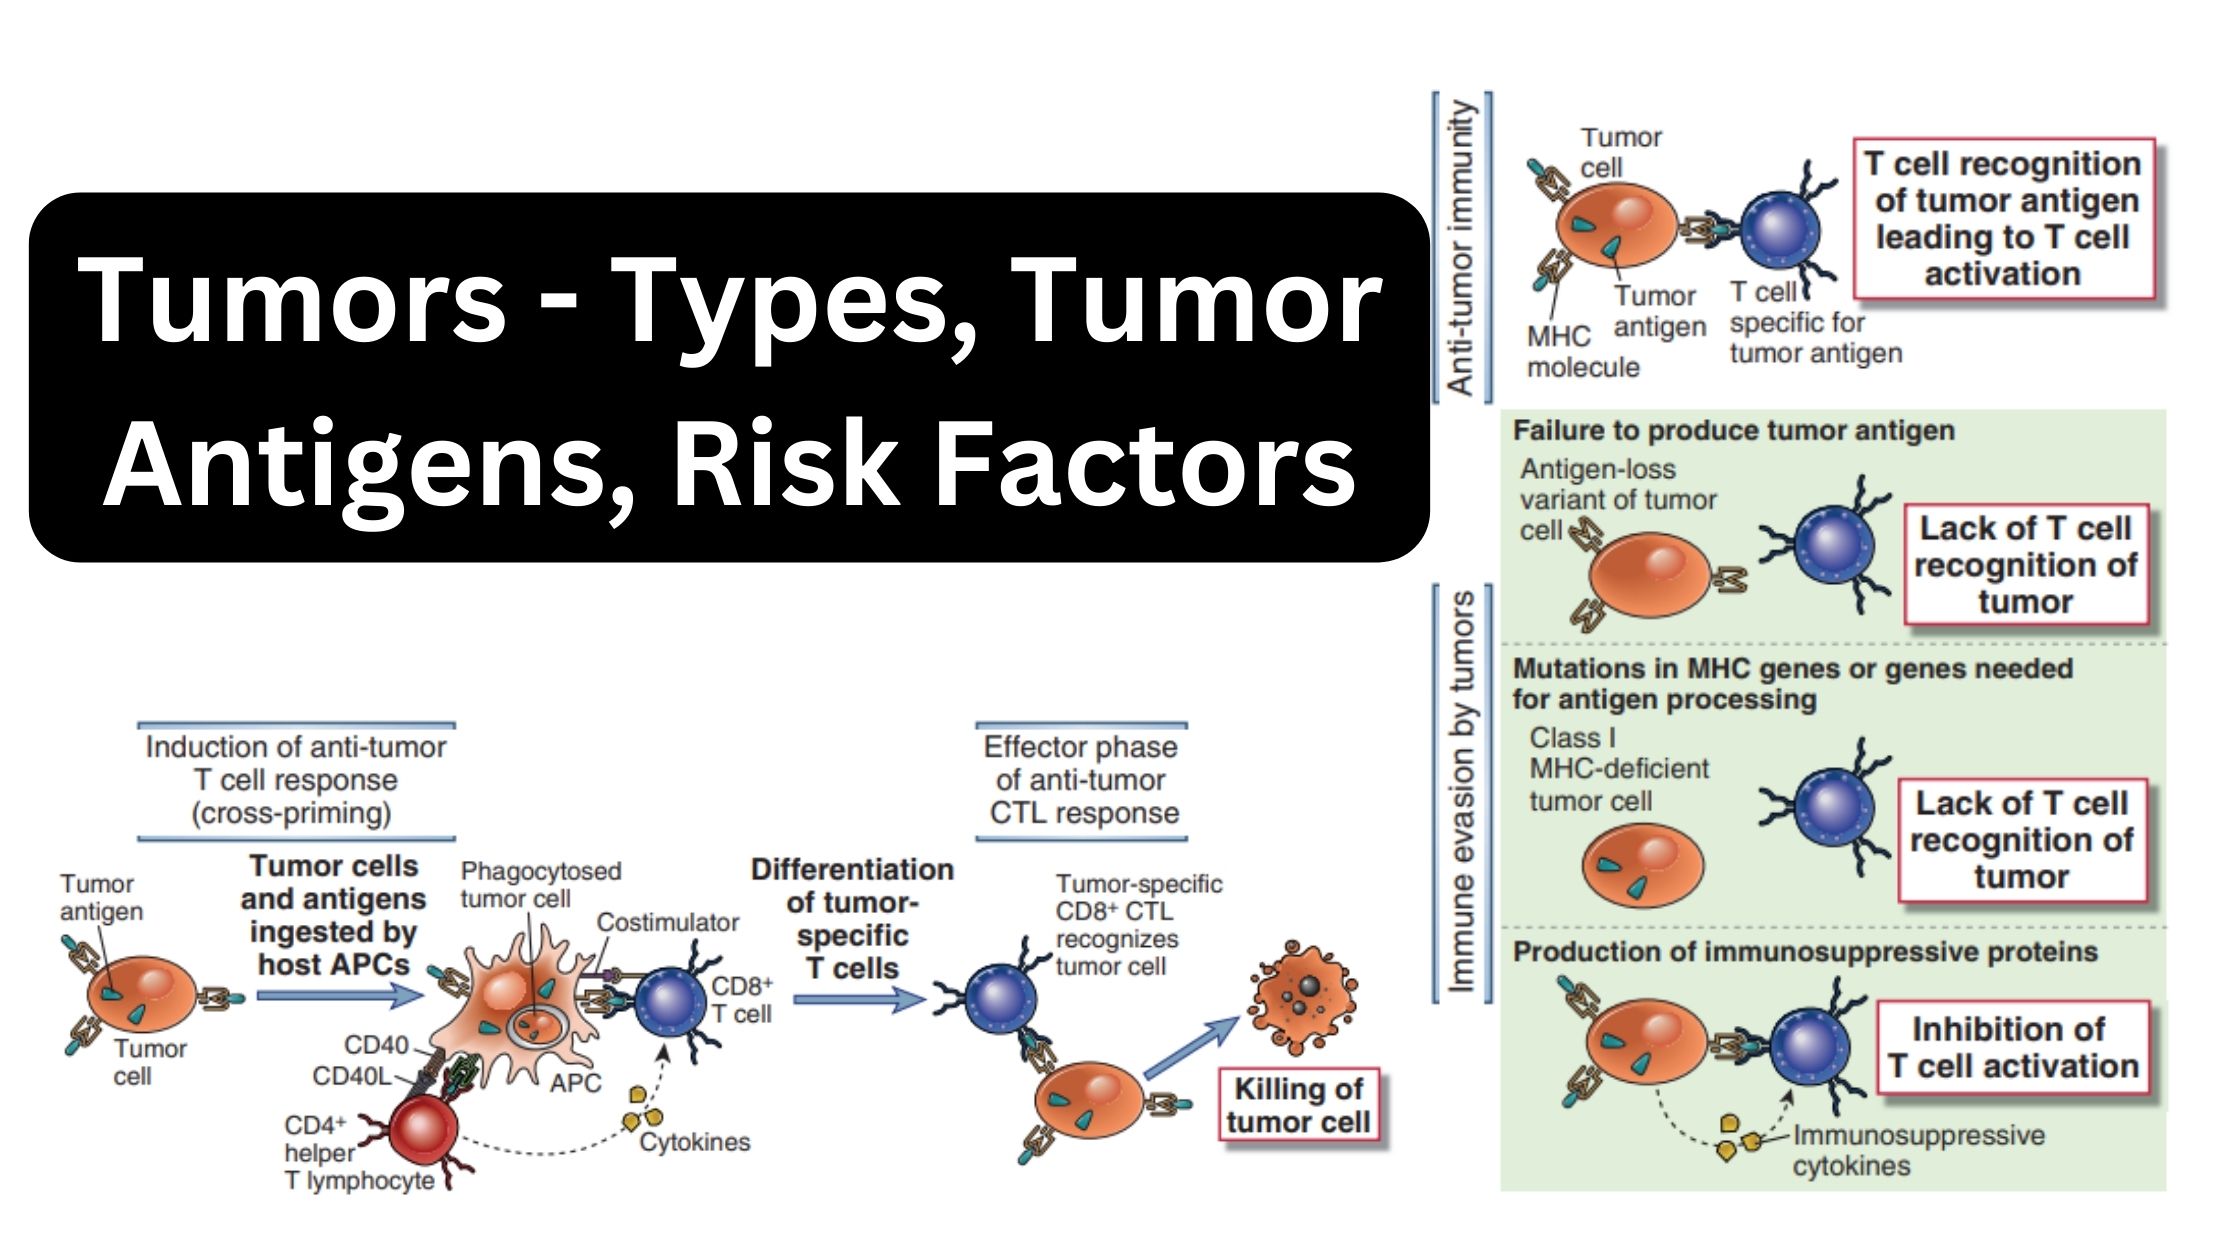 Tumors - Types, Tumor Antigens, Risk Factors